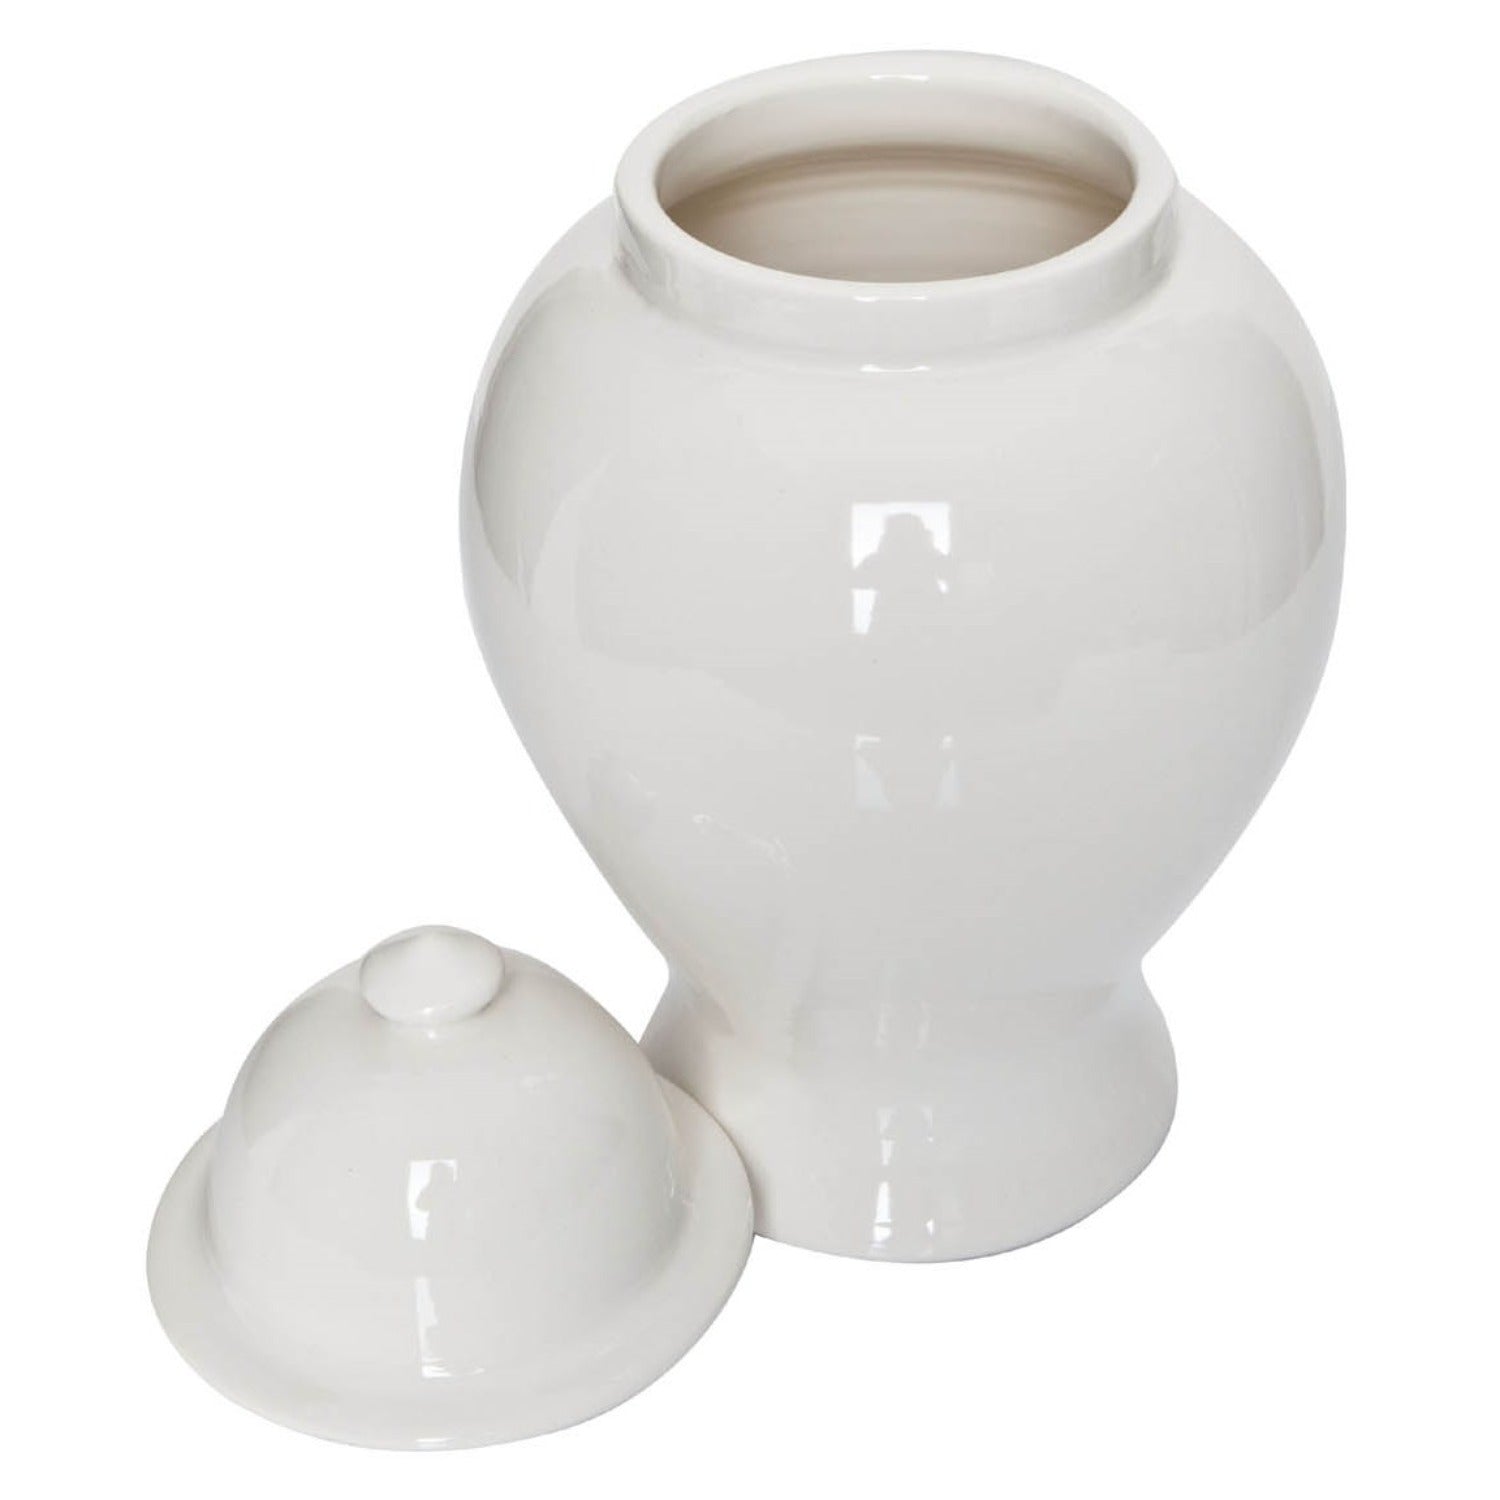 Vase mit Deckel in Keramik in creme weißer Farbe